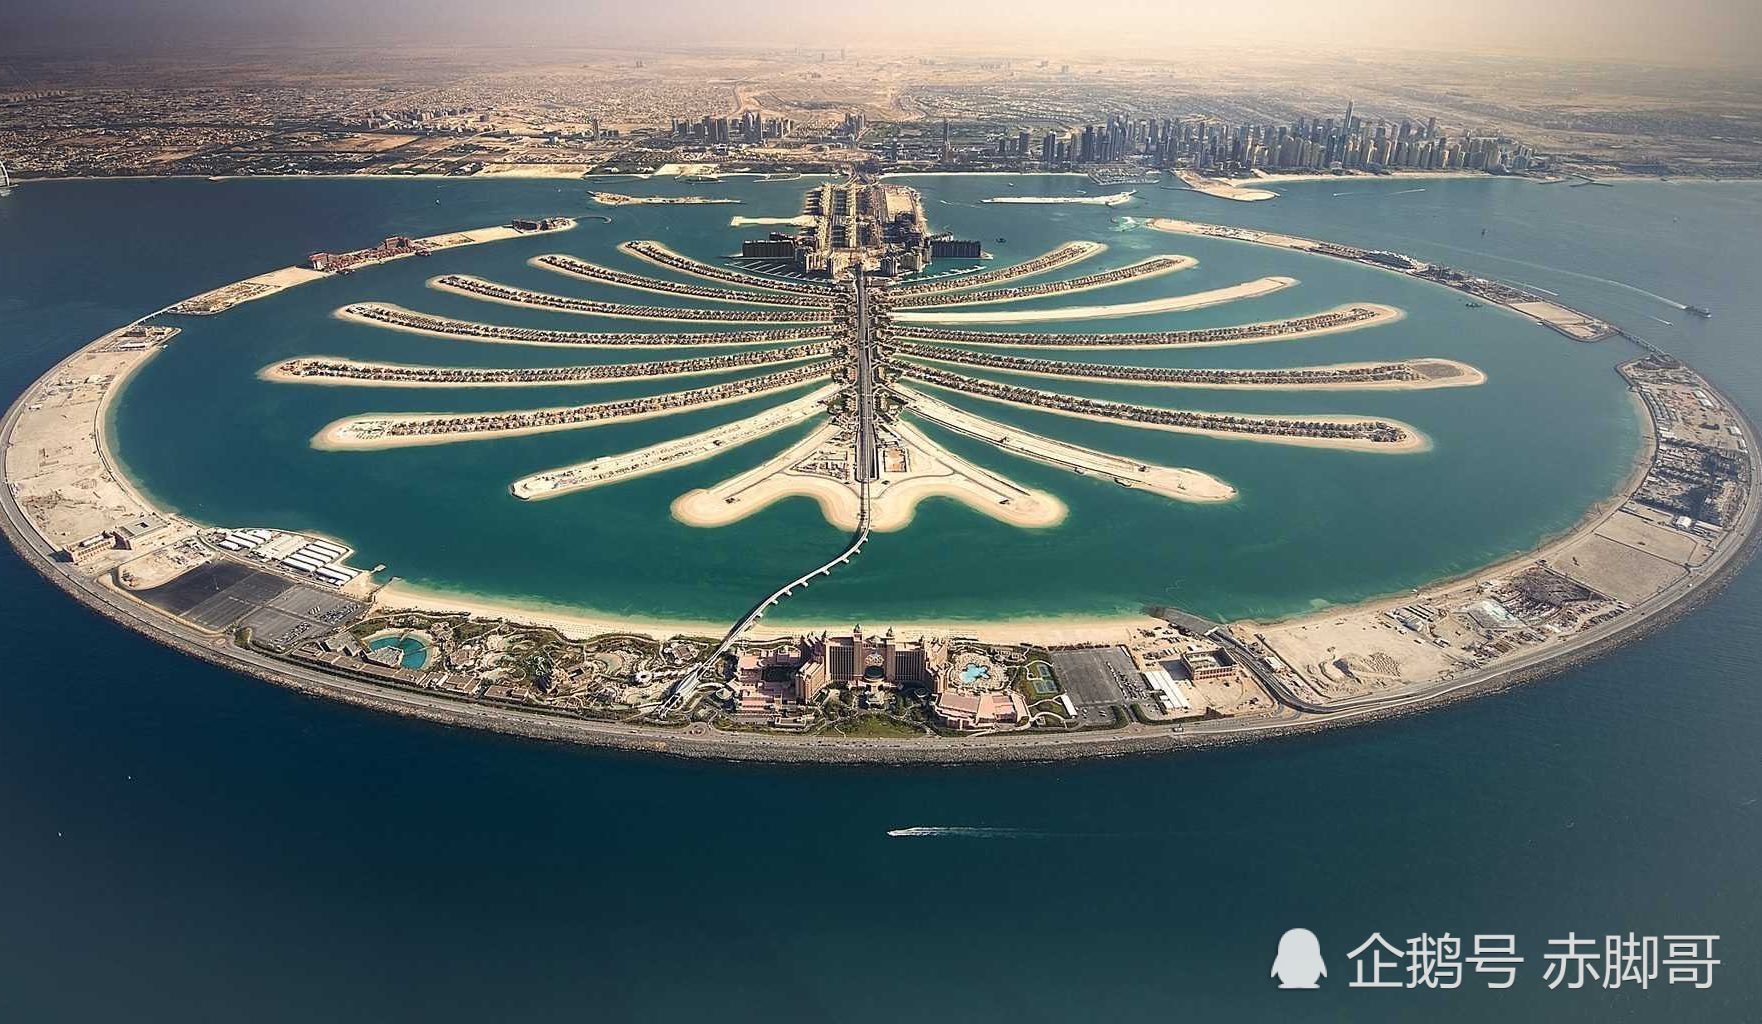 迪拜最吸引人的7大景点,你去过哪一个?